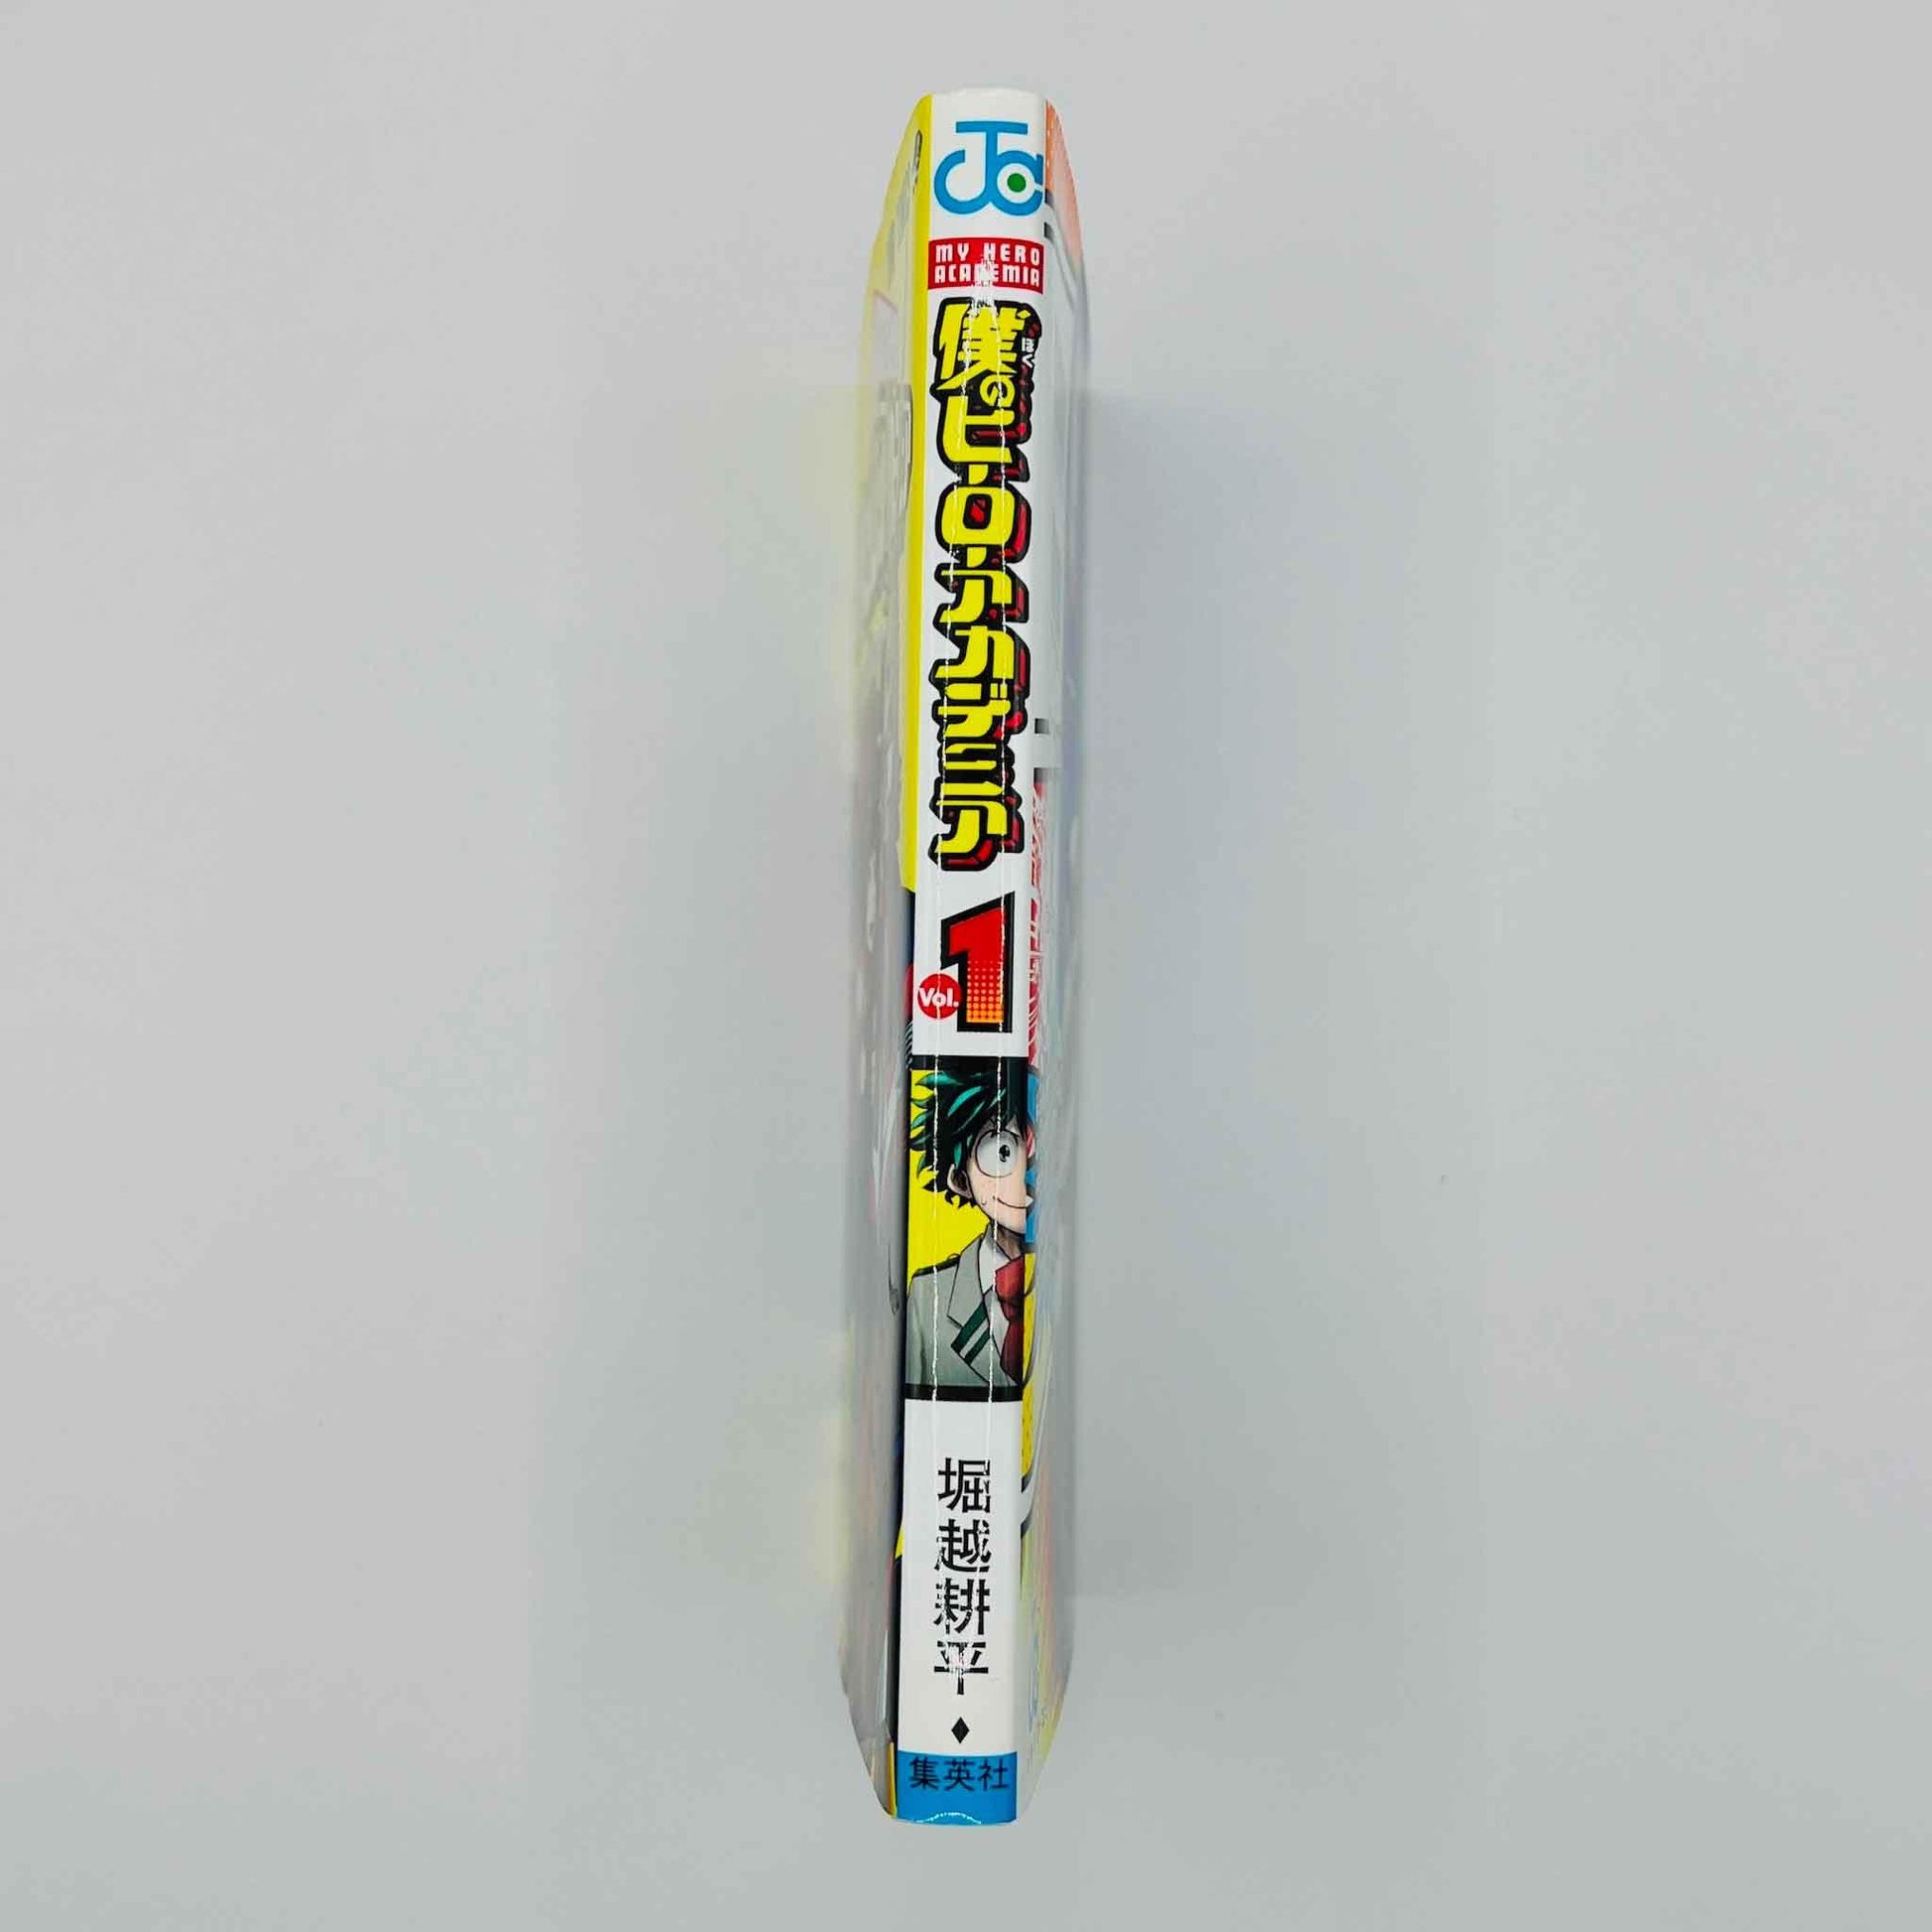 My Hero Academia - Volume 01 - 1stPrint.net - 1st First Print Edition Manga Store - M-MHA-01-007